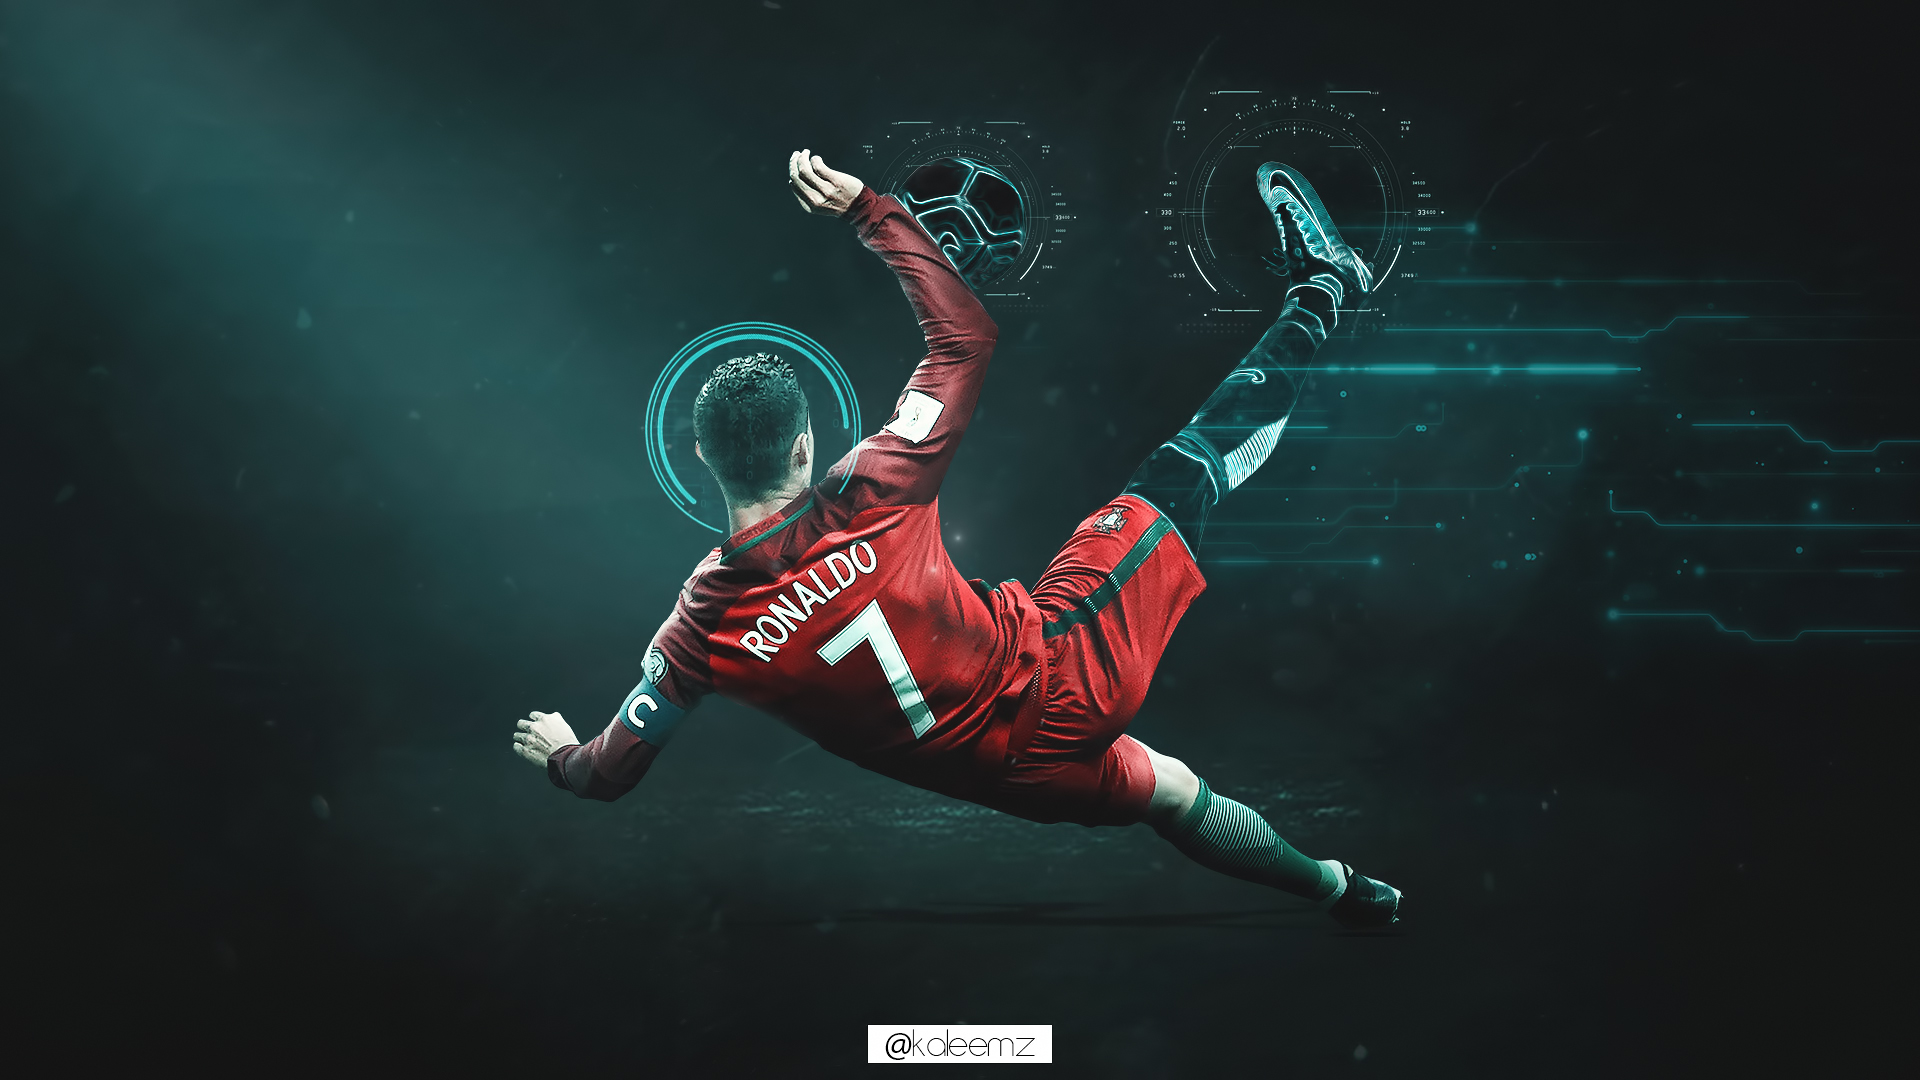 Với hình nền desktop Ronaldo độc đáo, bạn sẽ cảm thấy bị níu chặt bởi vẻ đẹp và sức hút của ngôi sao bóng đá Cristiano Ronaldo. Hãy thưởng thức những khoảnh khắc đáng nhớ trong trận đấu và cảm nhận niềm đam mê bất tận.